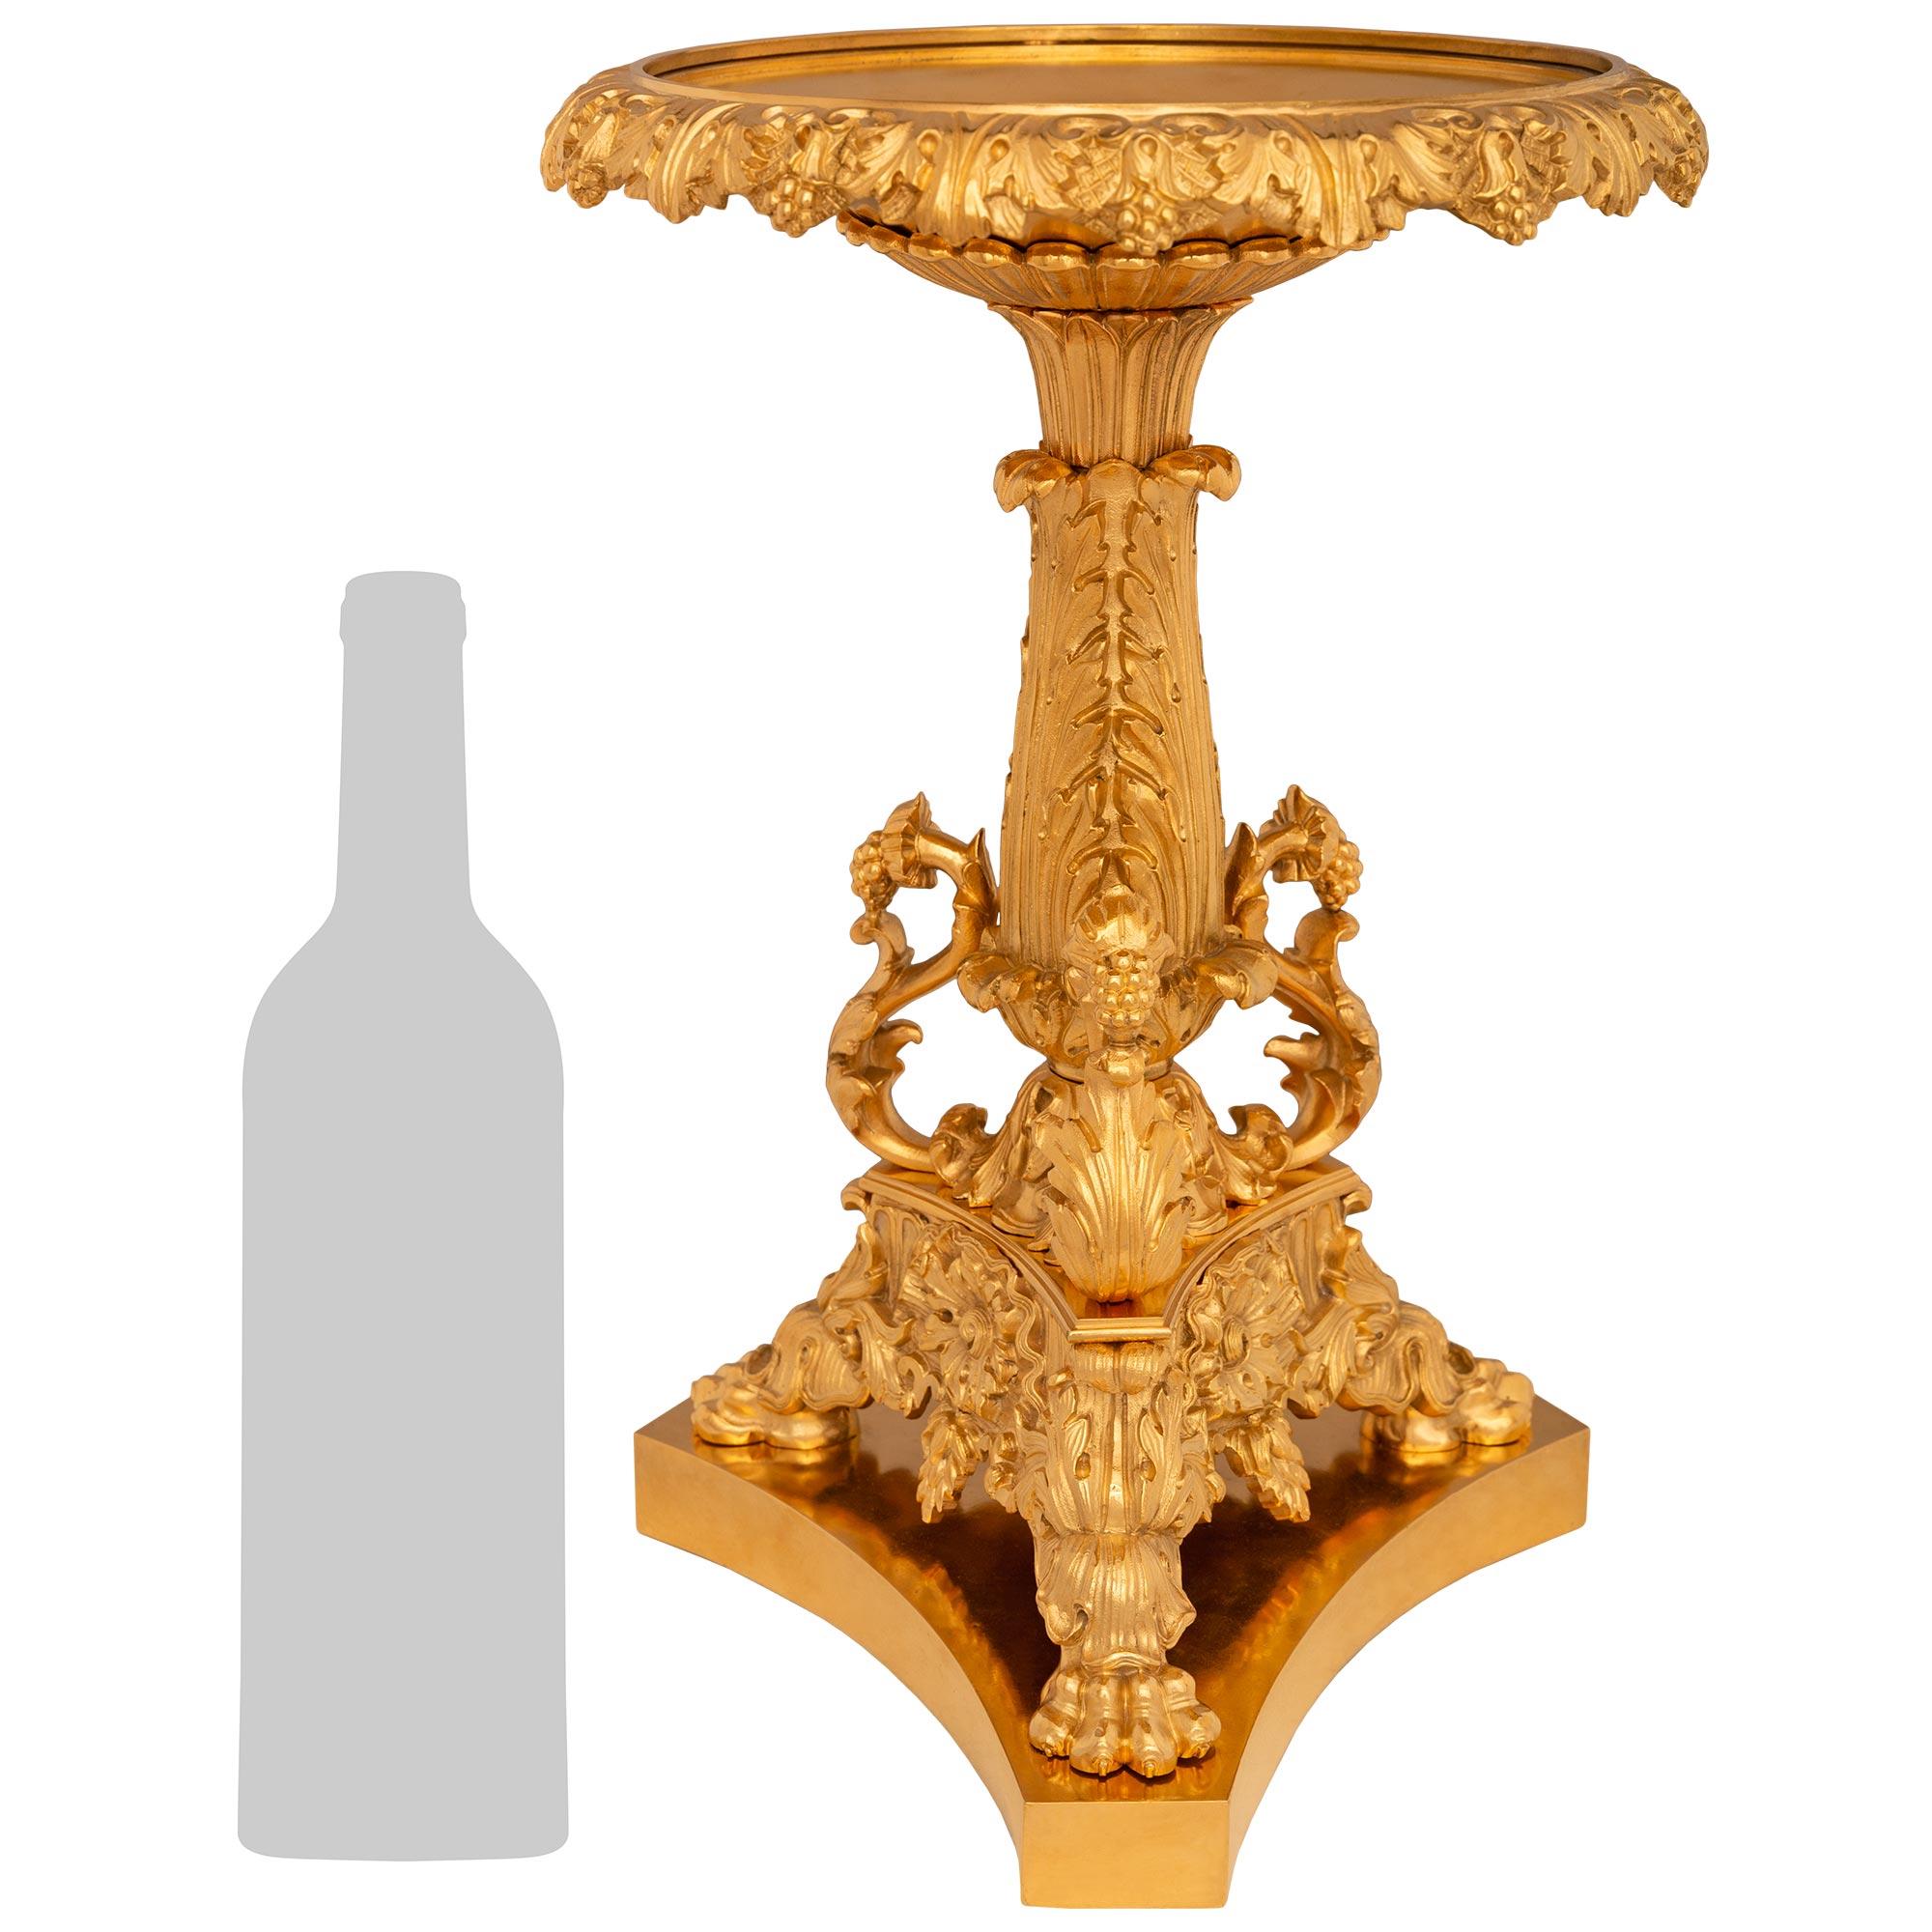 Tazza de centre de table en bronze doré de style Louis XVI du XIXe siècle, élégant et de grande qualité. Ce superbe centre de table repose sur une base triangulaire aux côtés concaves et présente une magnifique finition satinée et brunie.